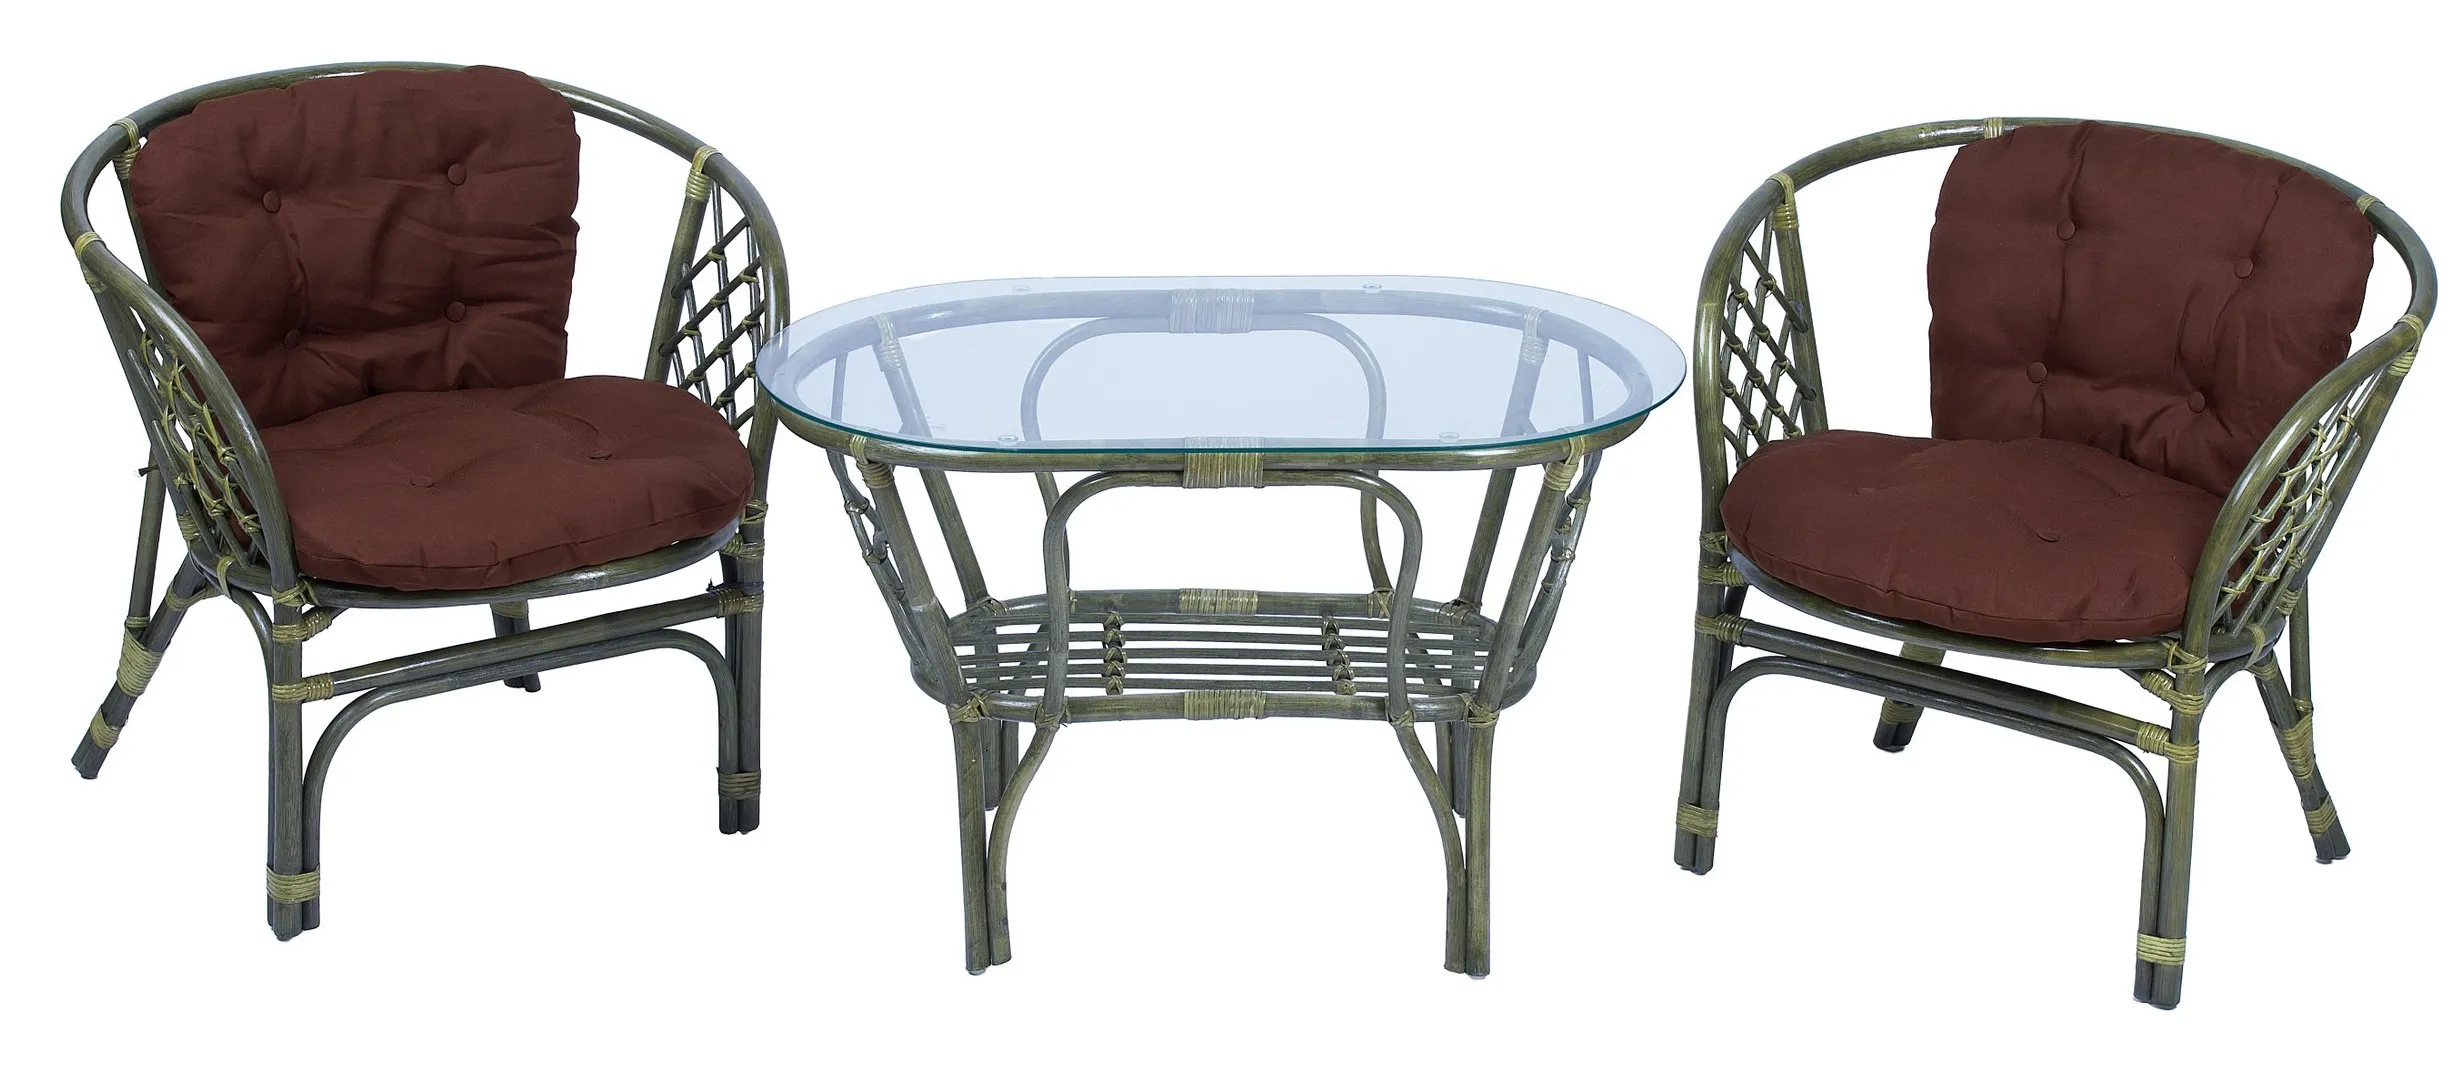 Комплект мебели из ротанга Багама дуэт с овальным столом олива (подушки твил обычные коричневые)